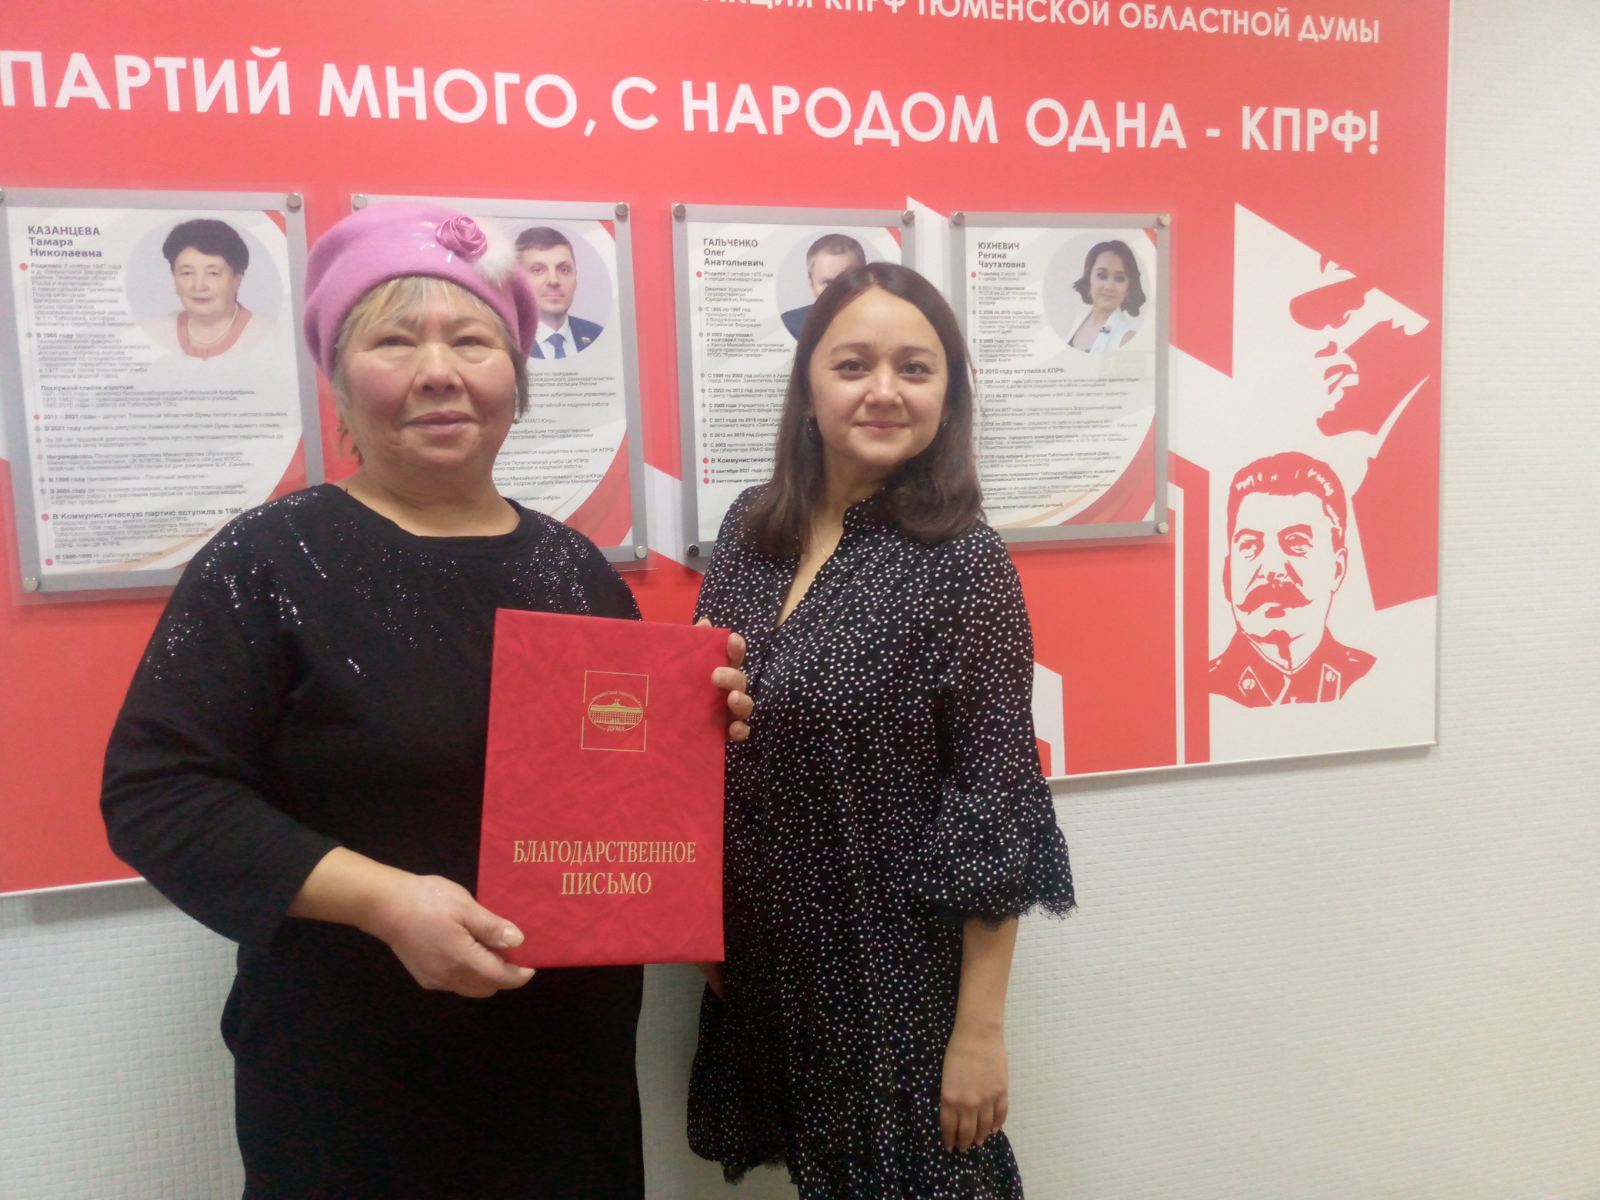 Регина Юхневич вручила благодарственное письмо областной думы жительнице села Онохино Тюменского района